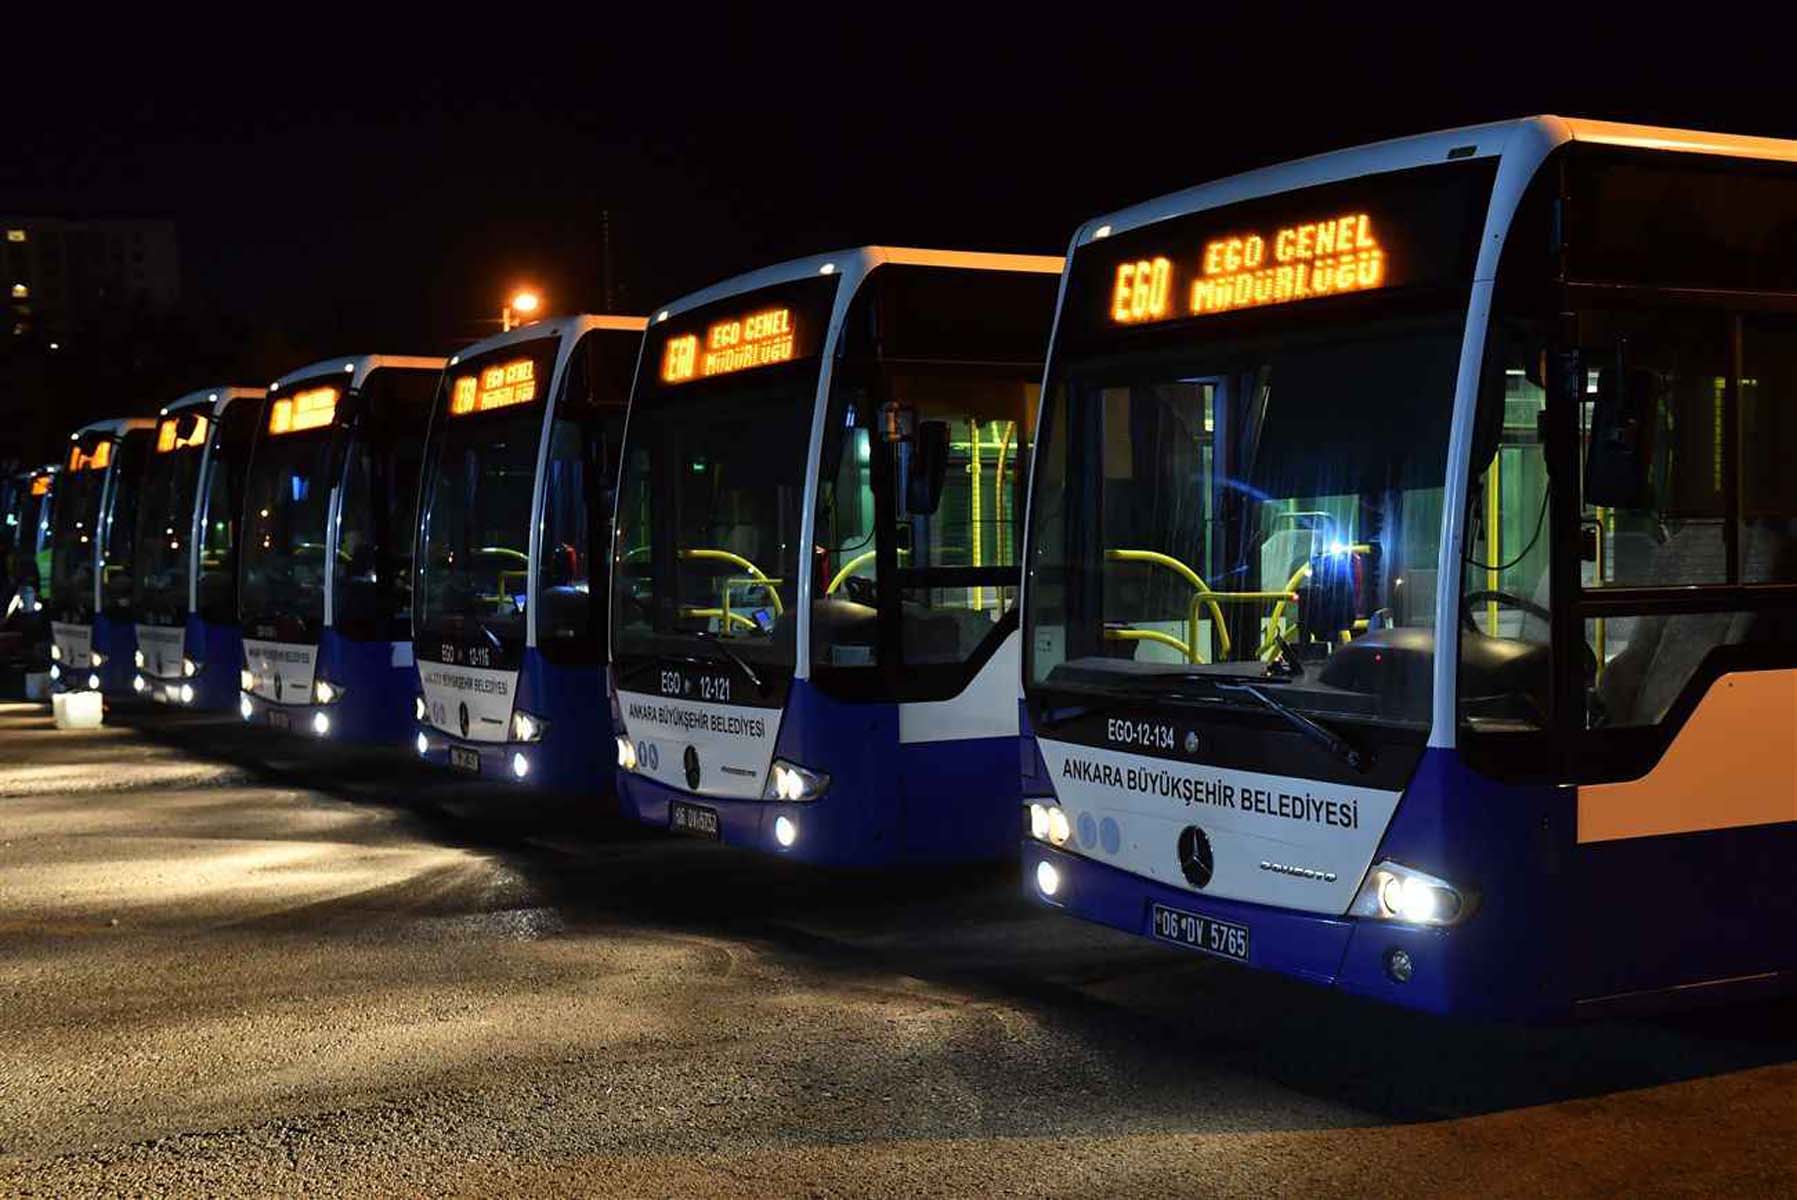 Ankara'da Ramazan bayramında toplu taşıma bedava mı 2-3-4 Mayıs 2022?  Ramazan bayramında EGO, Başkentray, otobüs ücretsiz mi?